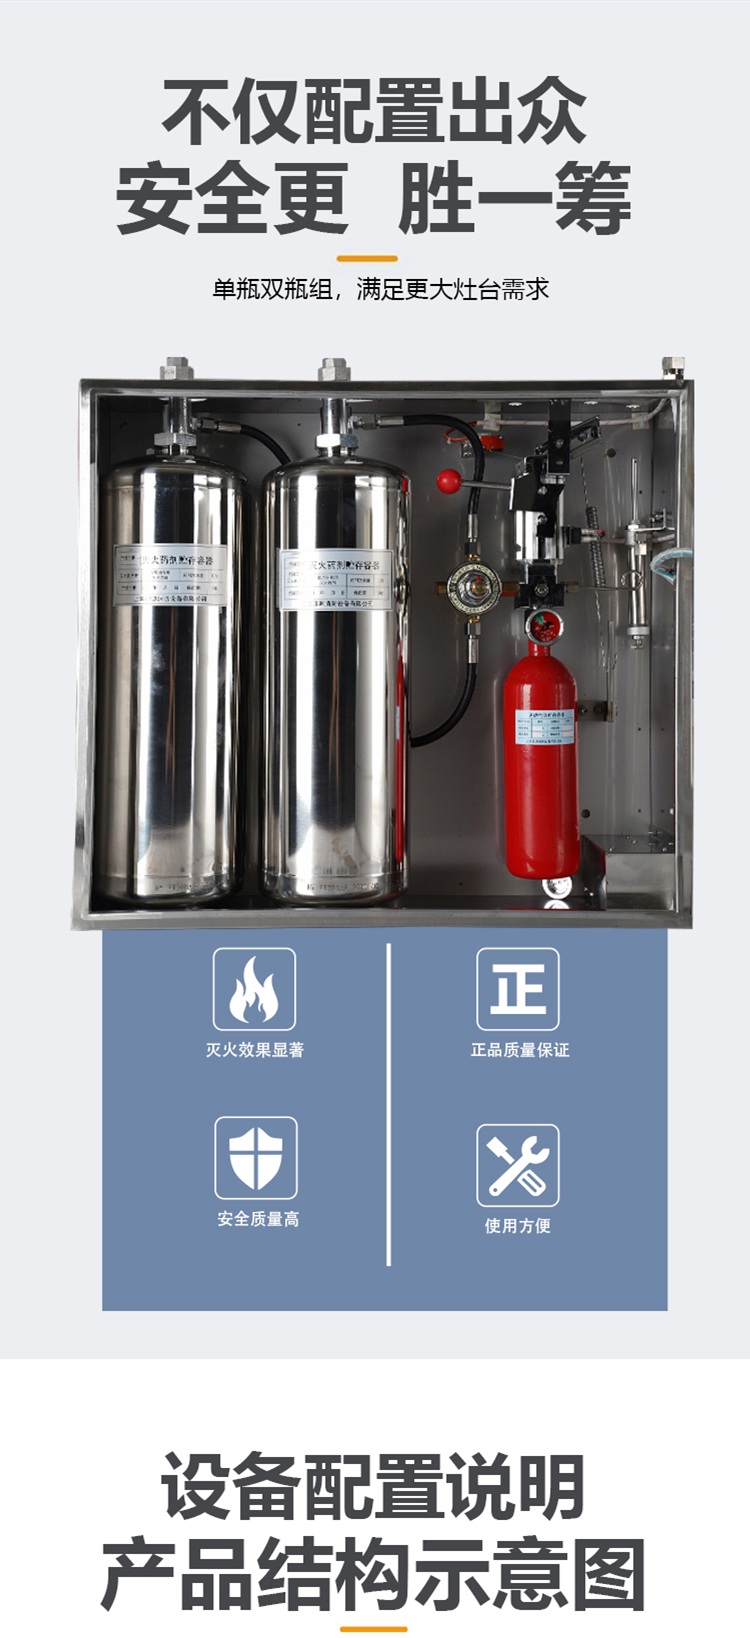 厨房自动灭火装置 系统设备-单罐双瓶组动火离人-酒店餐厅专用